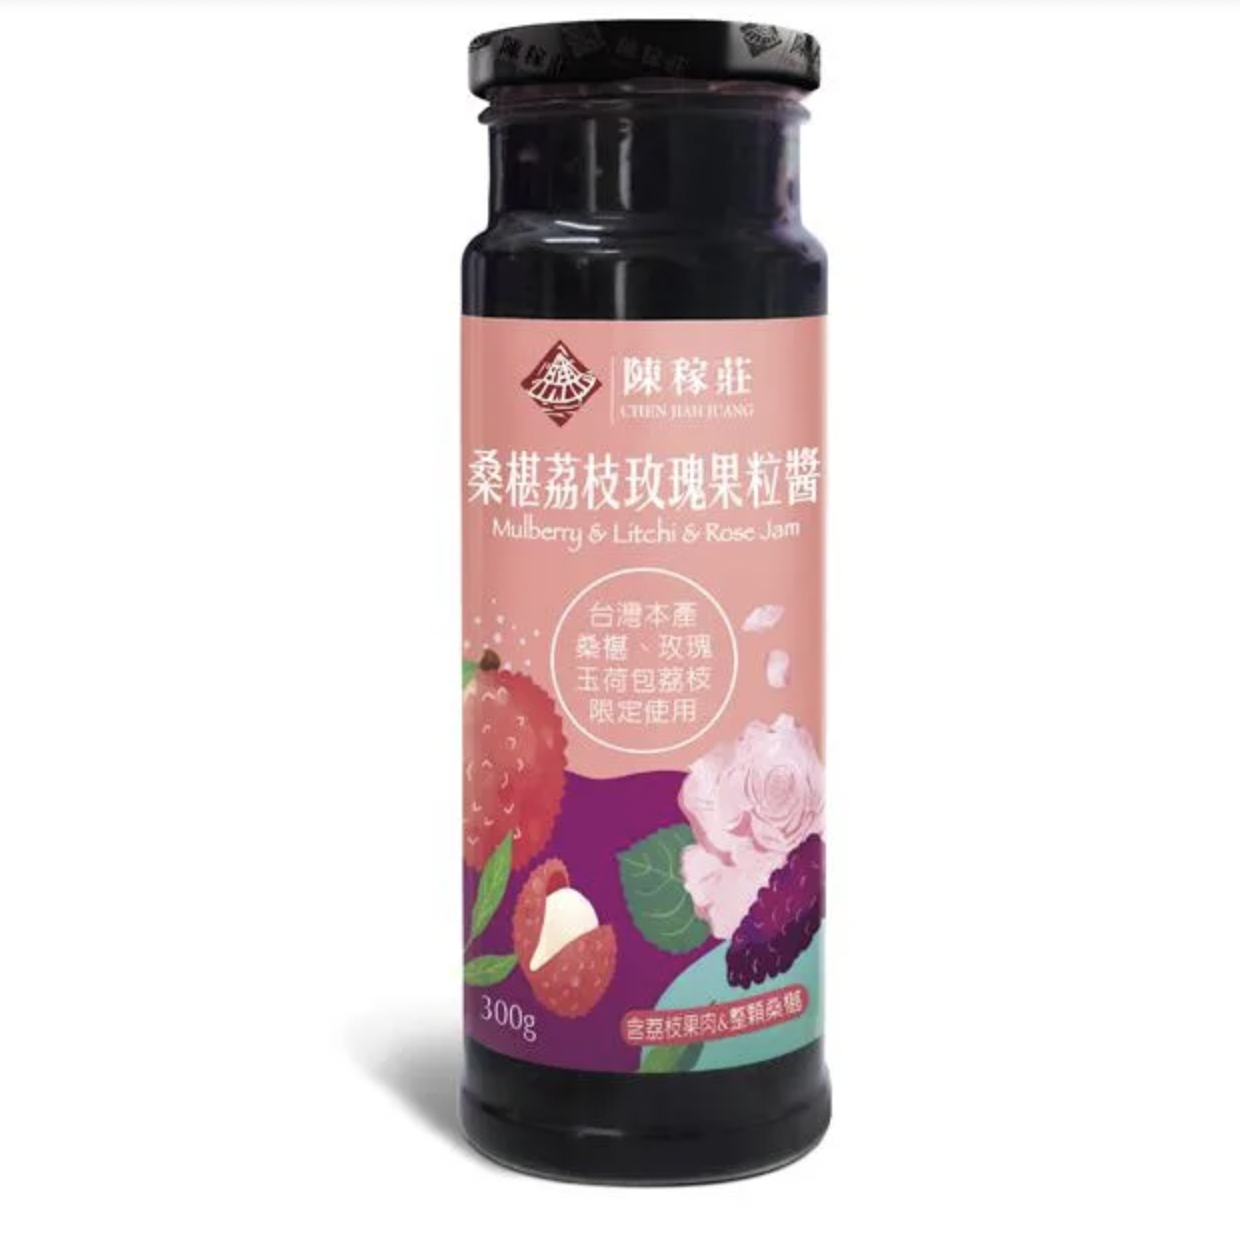 #6032 桑椹荔枝玫瑰果粒醬 Mulberry & Litchi & Rose Jam (陳稼莊) 300ml, 24/cs